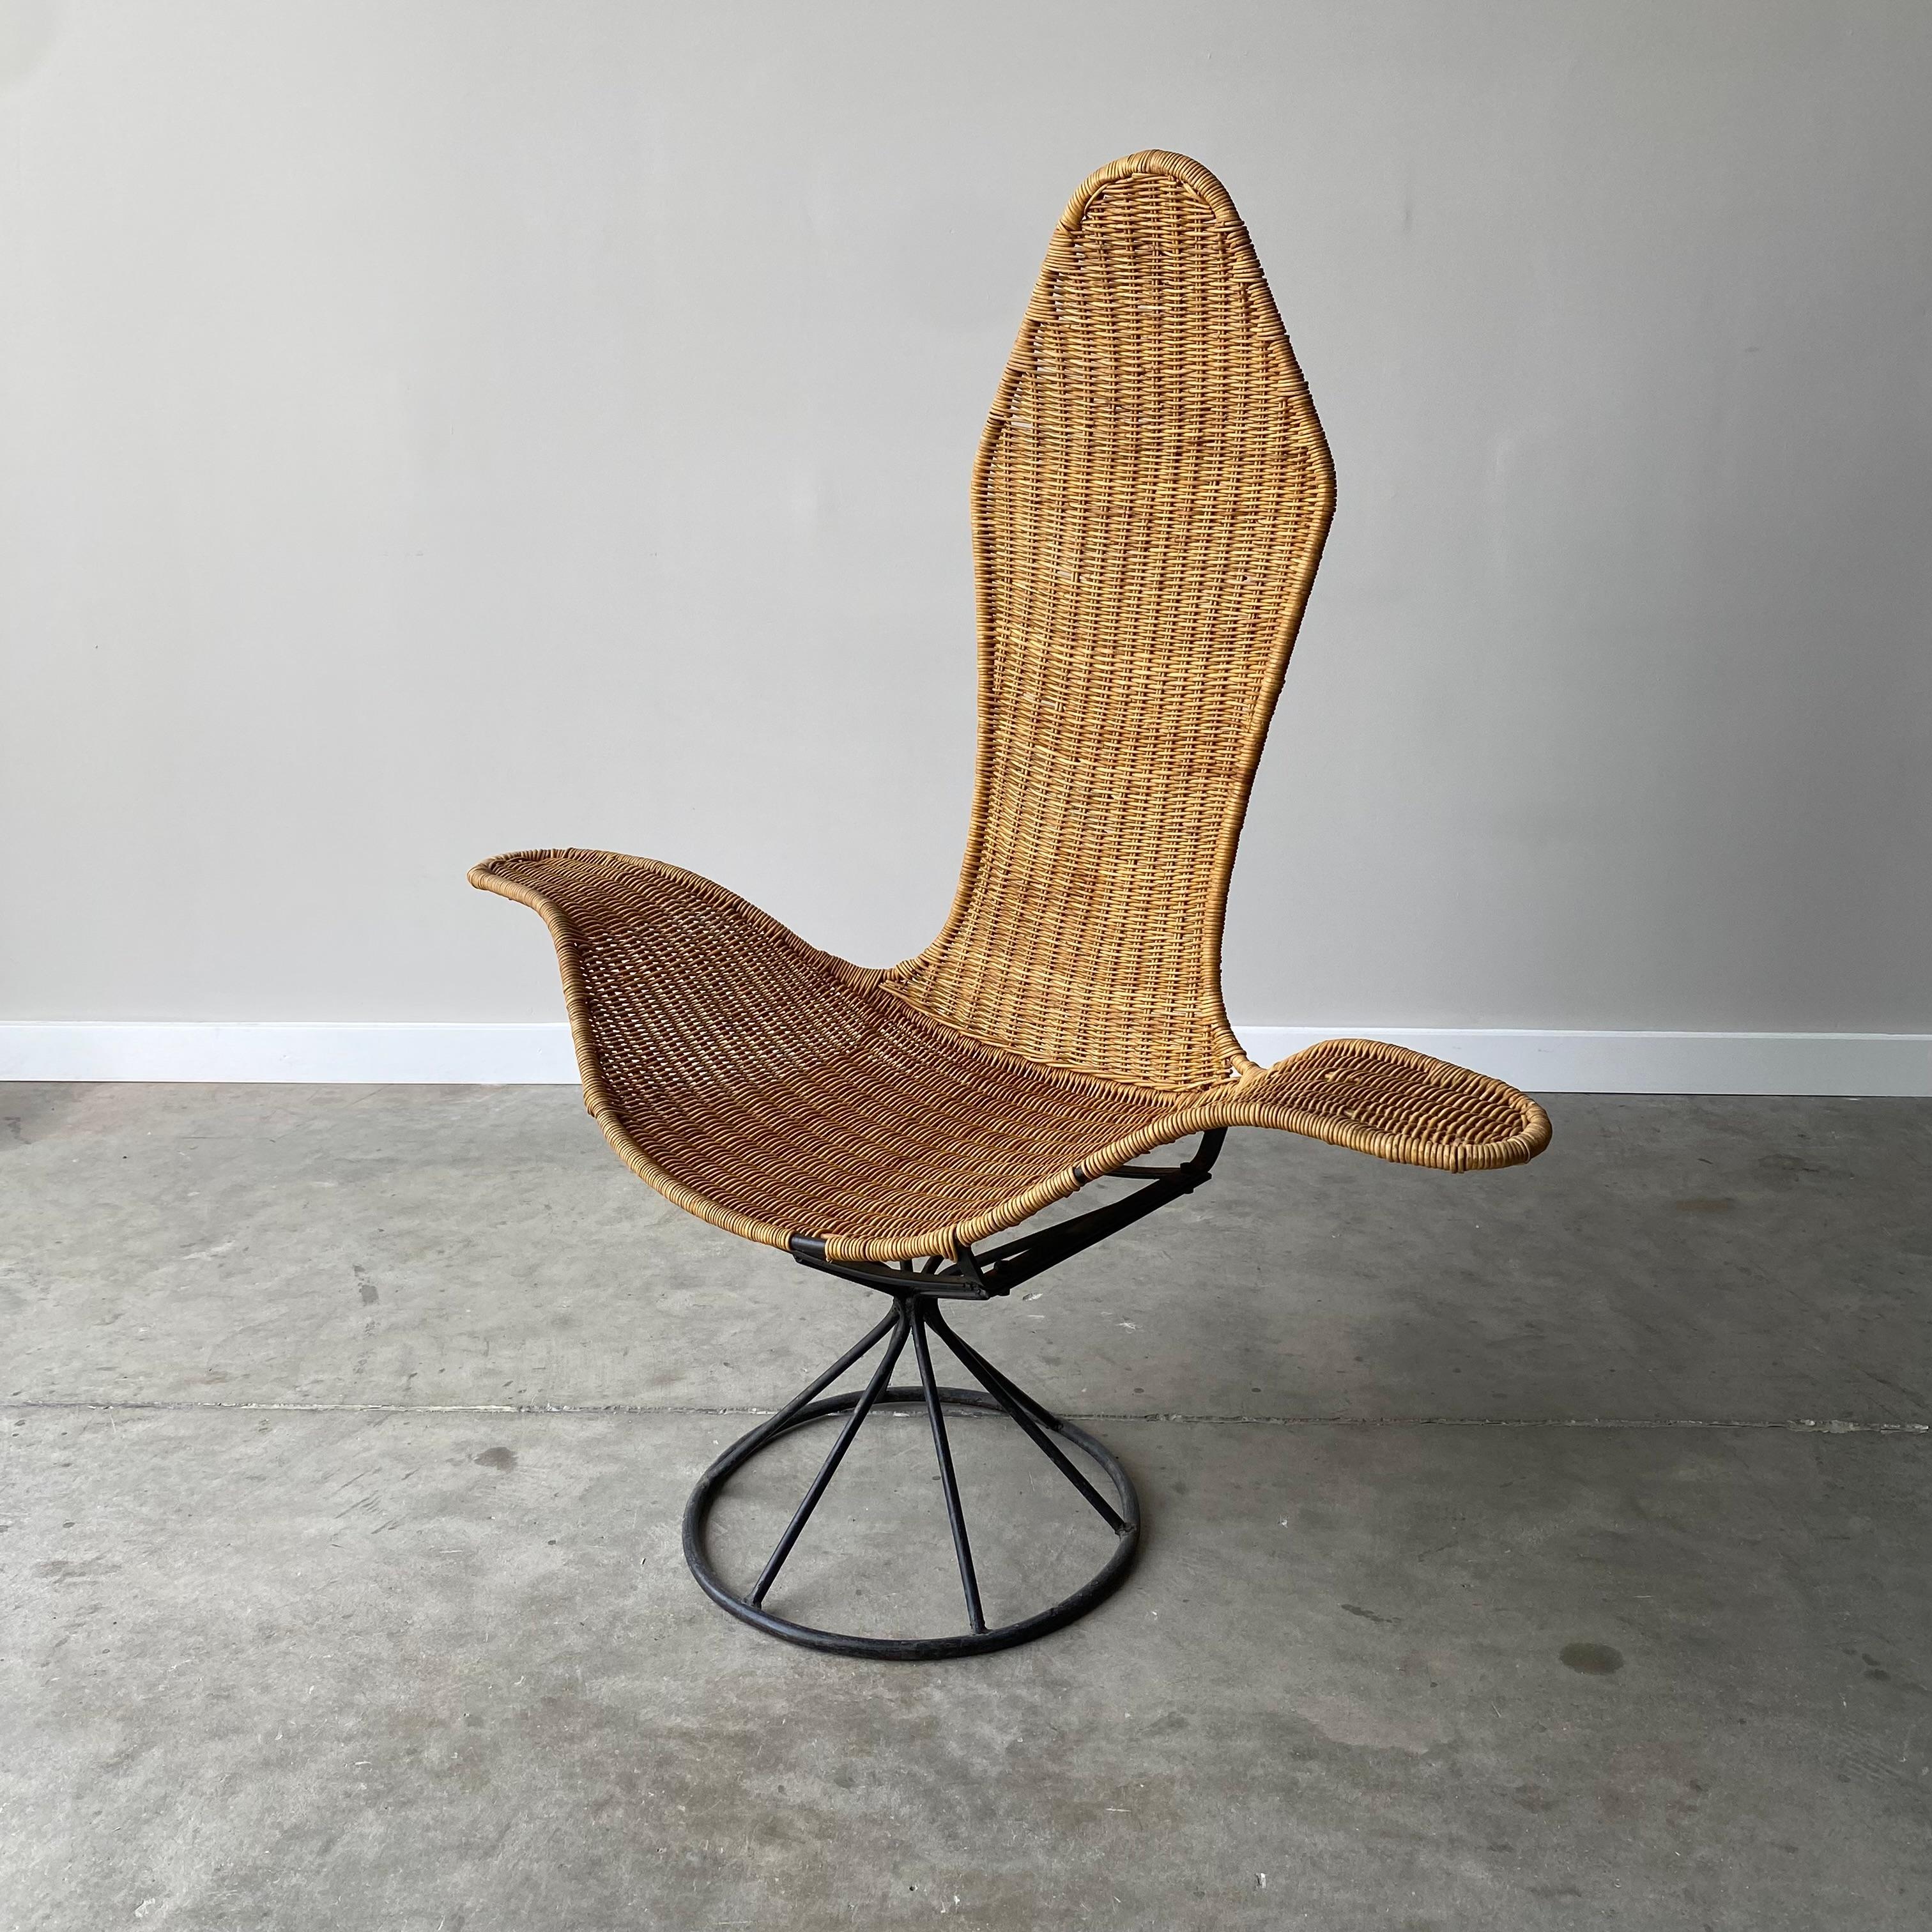 Danny Ho Fong entwarf diesen Wellenstuhl in den späten 1960er Jahren für Tropi-cal. Er besteht aus einem Stahlrahmen und handgeflochtenem Rattan.  Seine organische Natur macht ihn perfekt für einen Raum, der ein wenig Textur und viel skulpturale